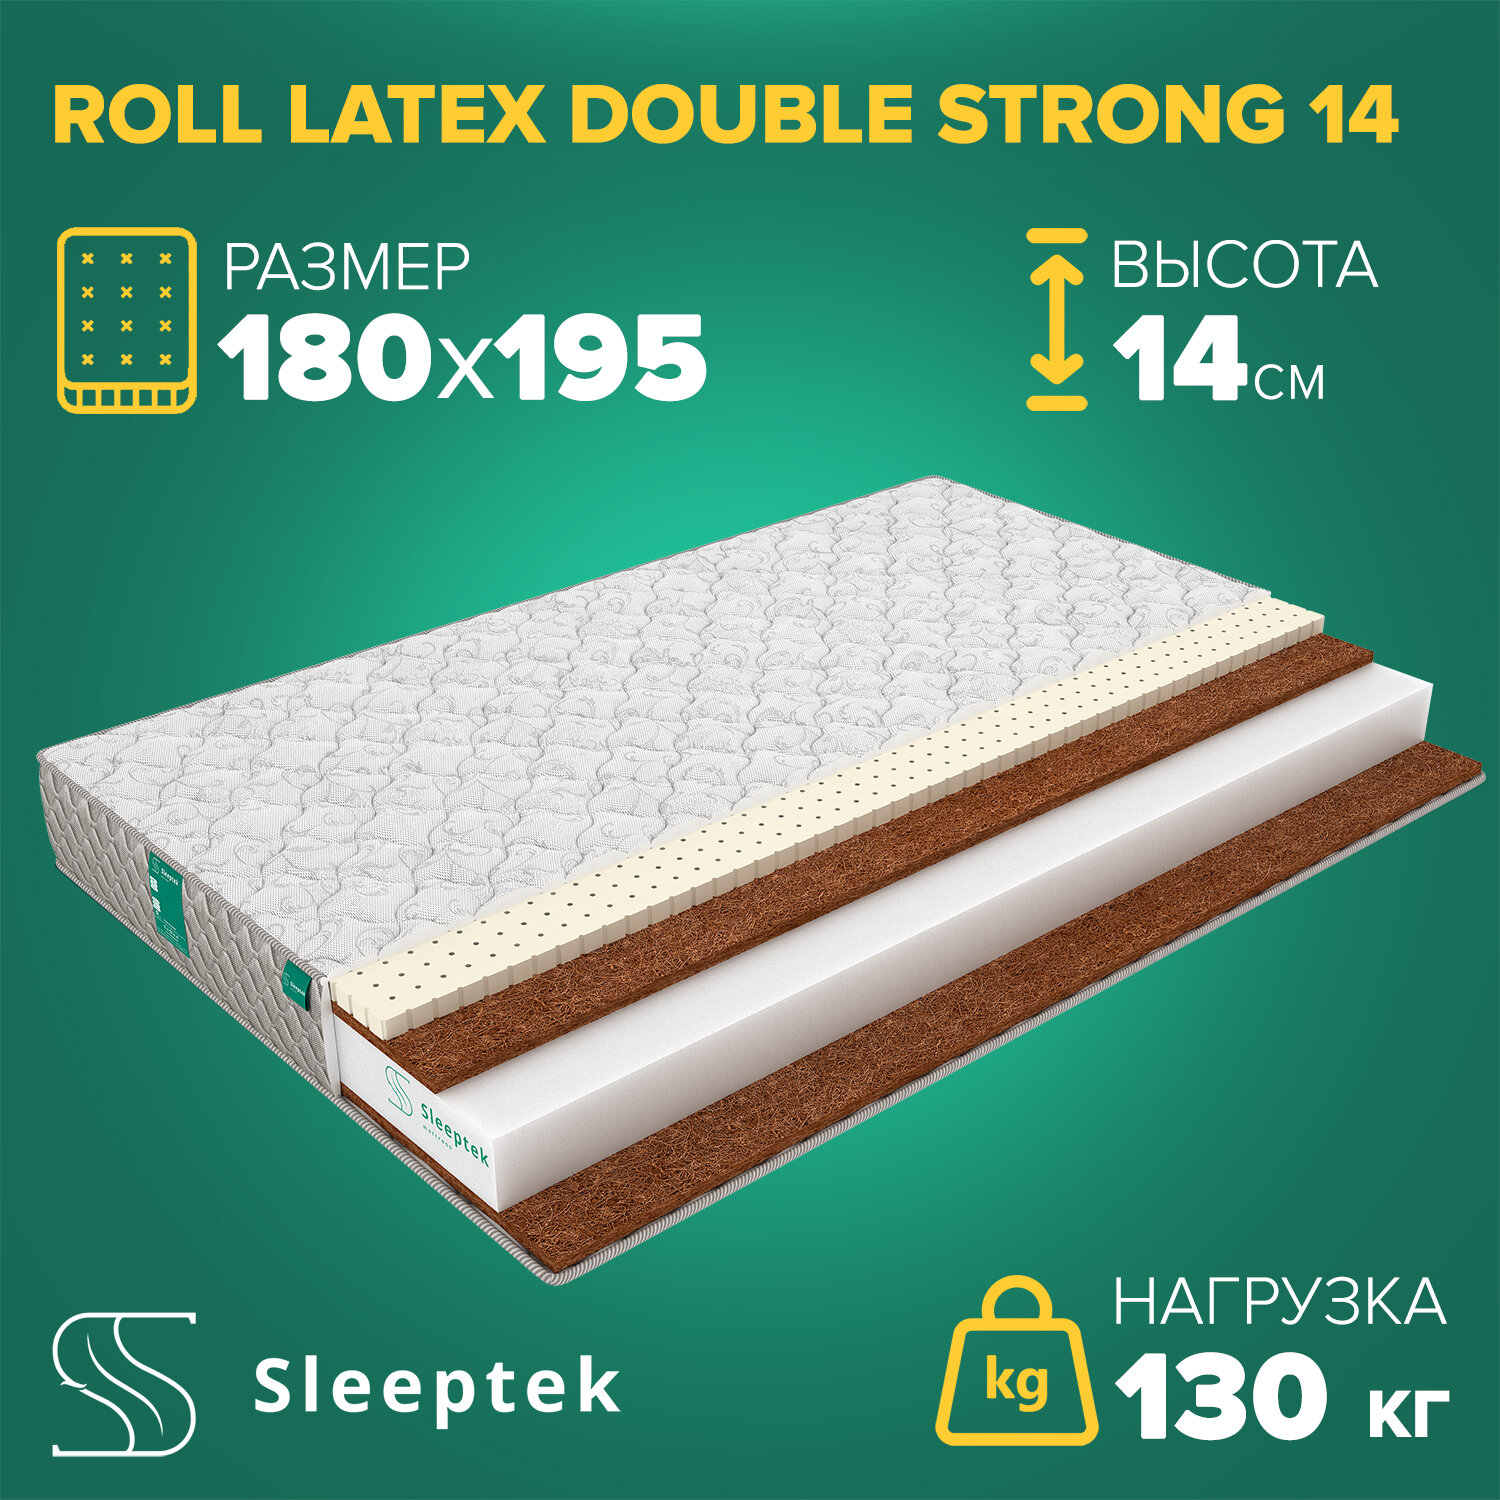 Матрас Sleeptek Roll Latex DoubleStrong 14 180х195